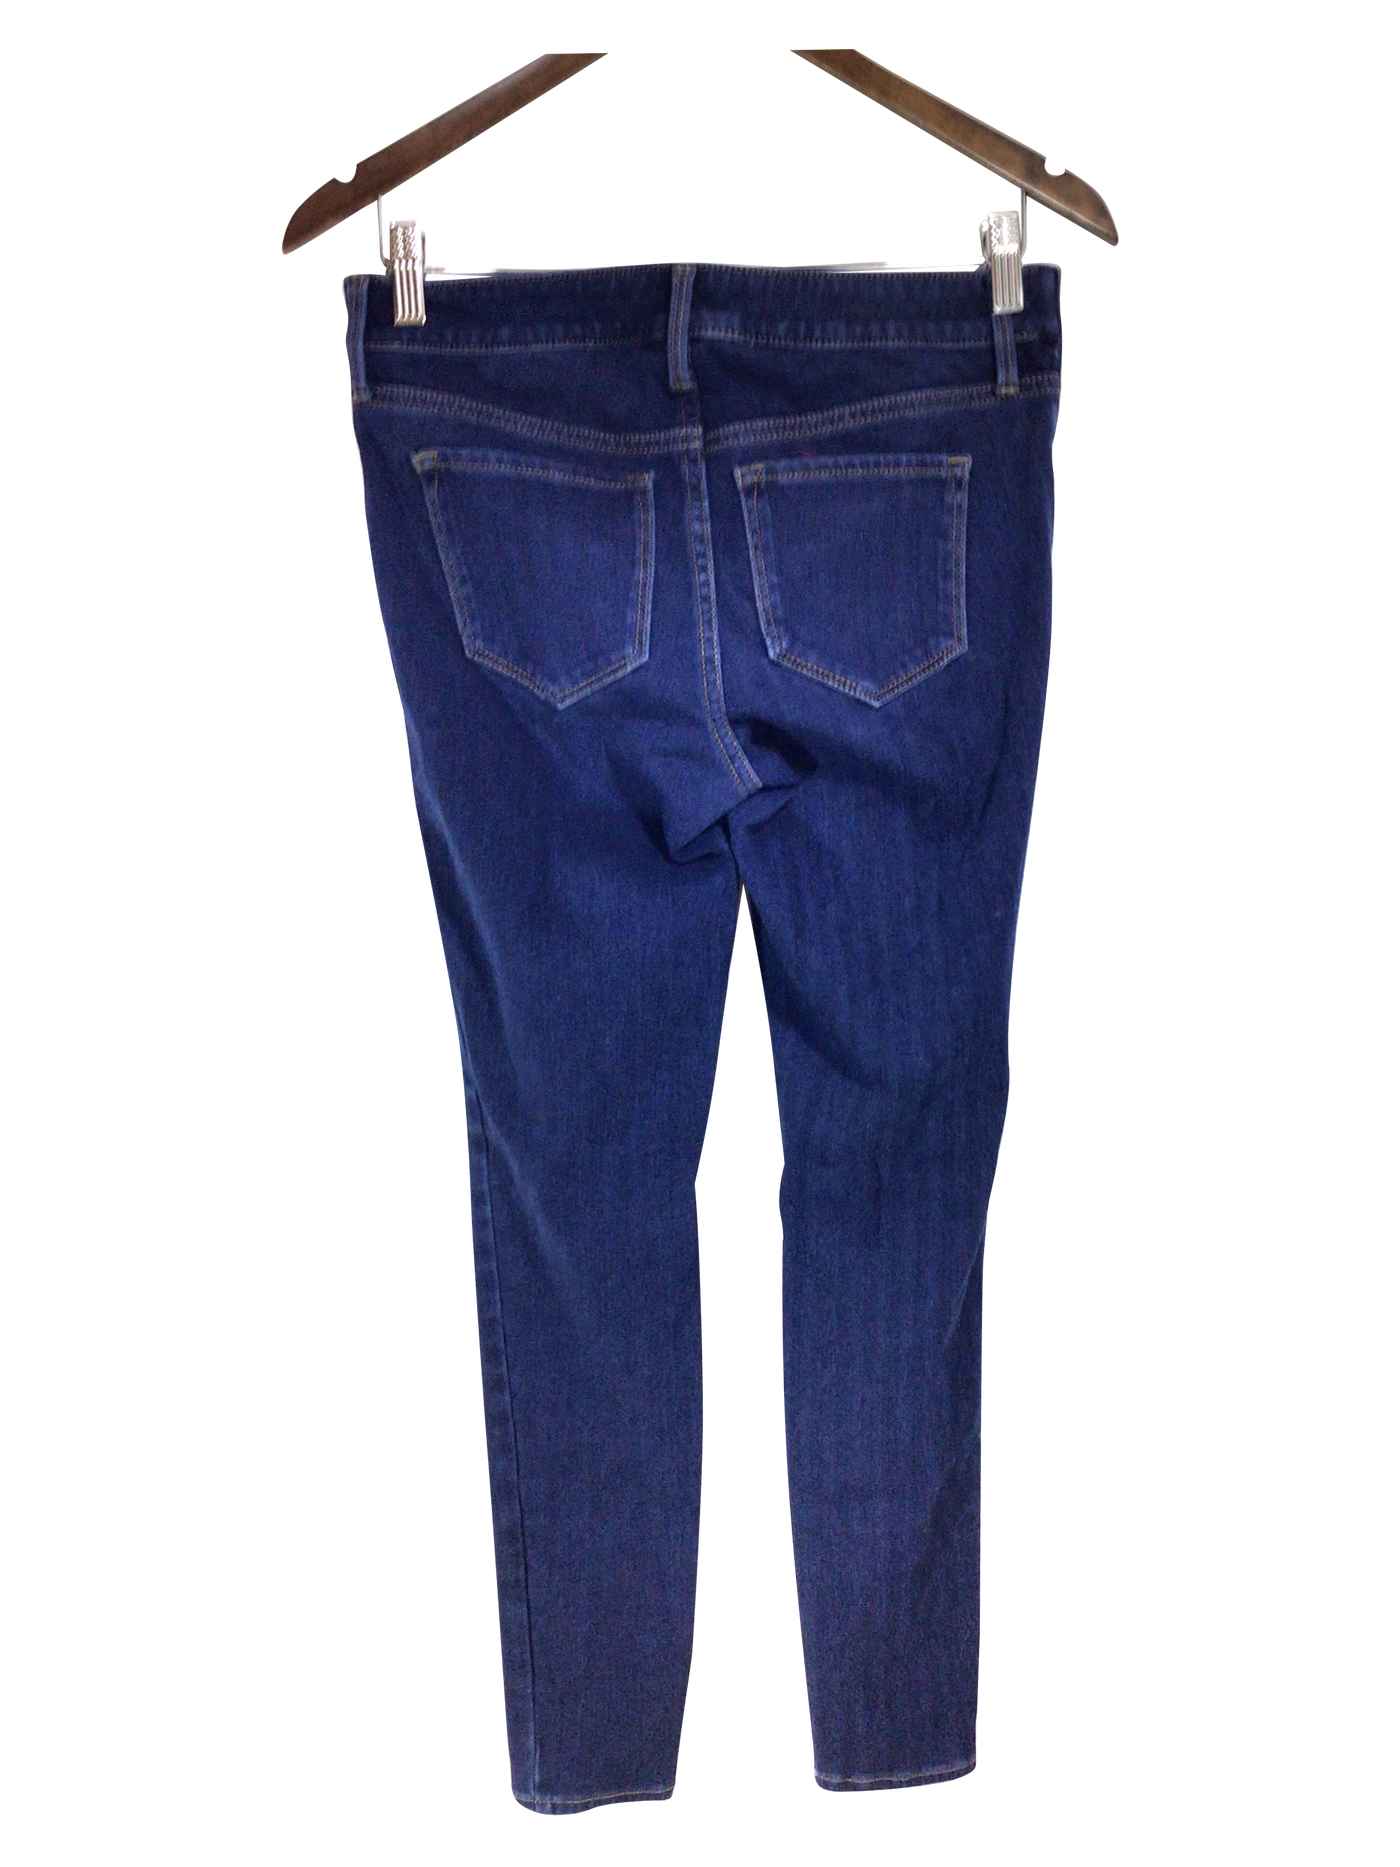 OLD NAVY Women Straight-Legged Jeans Regular fit in Blue - Size 0 | 11.29 $ KOOP